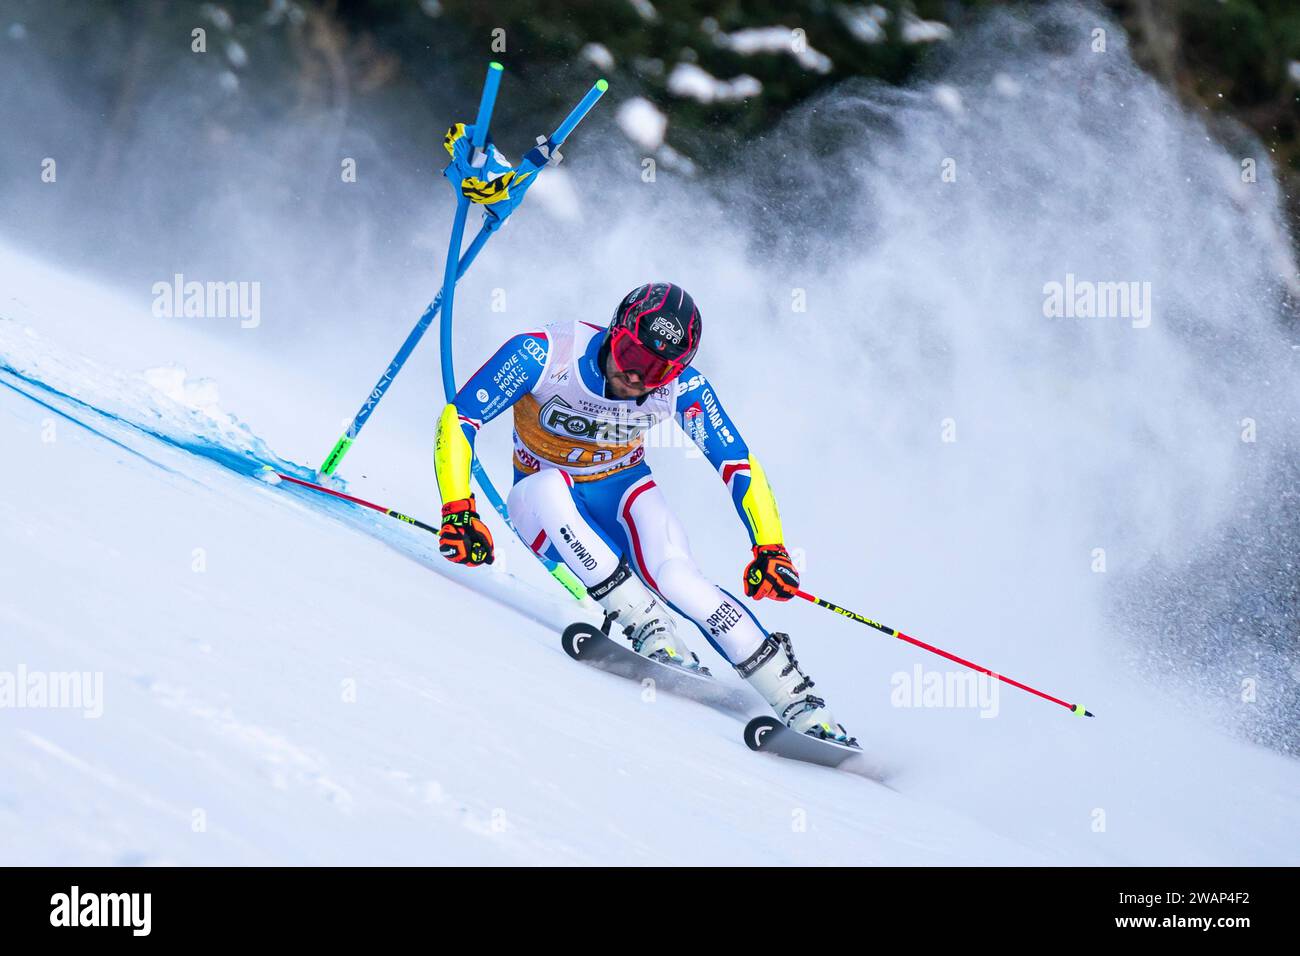 Alta Badia, Italia 17 dicembre 2023. FAIVRE Mathieu (fra) gareggia nella Coppa del mondo di sci alpino Audi Fis 2023-24 Slalom gigante maschile sulla Gran Risa Foto Stock